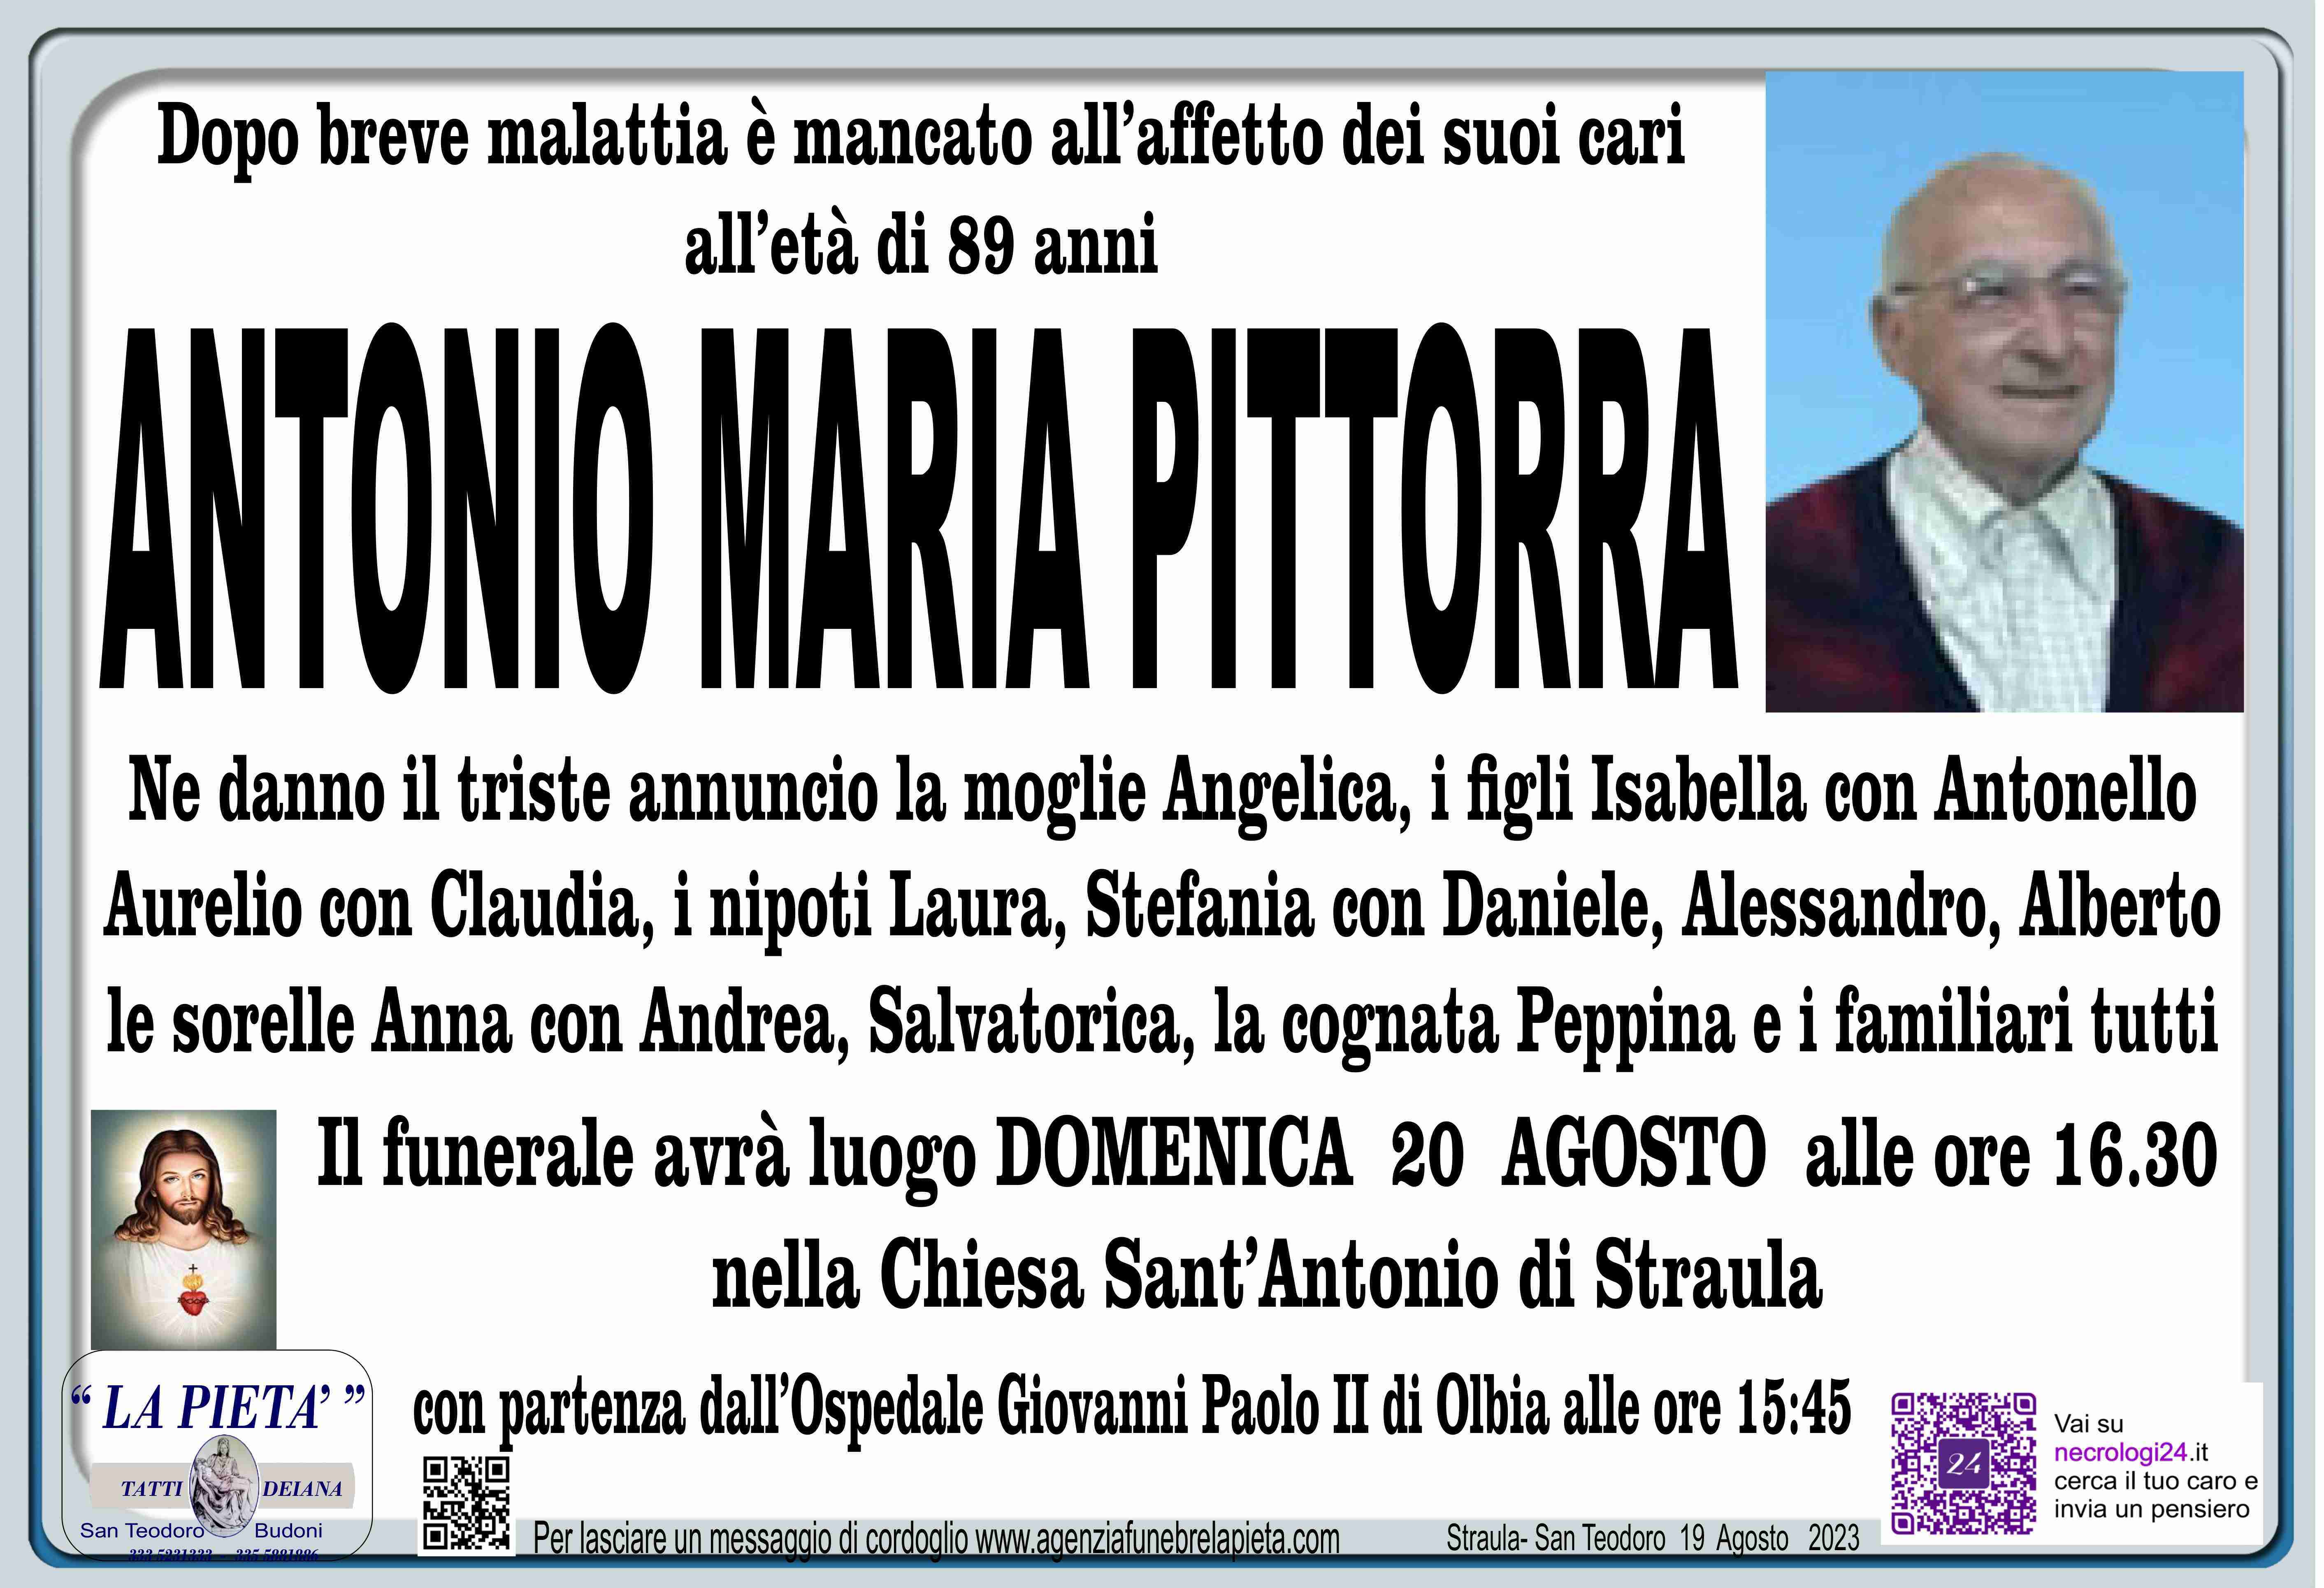 Antonio Maria Pittorra